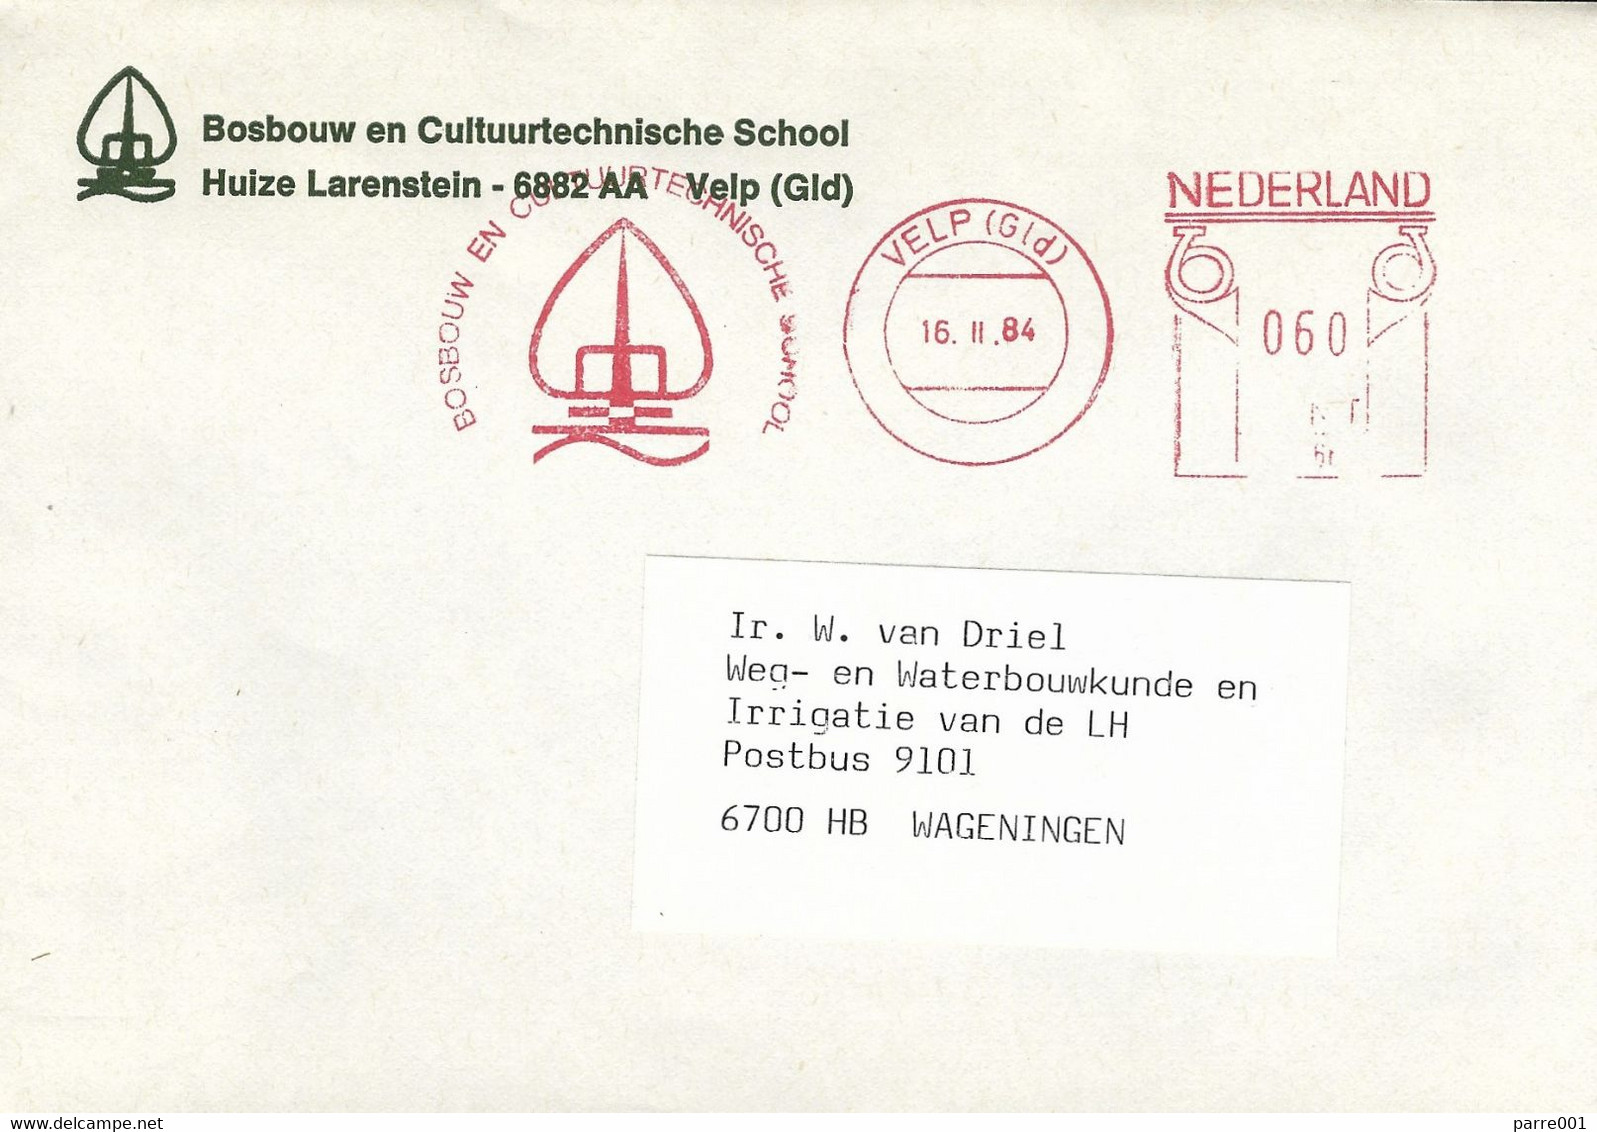 Nederland Netherlands 1984 Velp Meter Postalia “P” PR4665 Forestry School EMA Cover - Maschinenstempel (EMA)